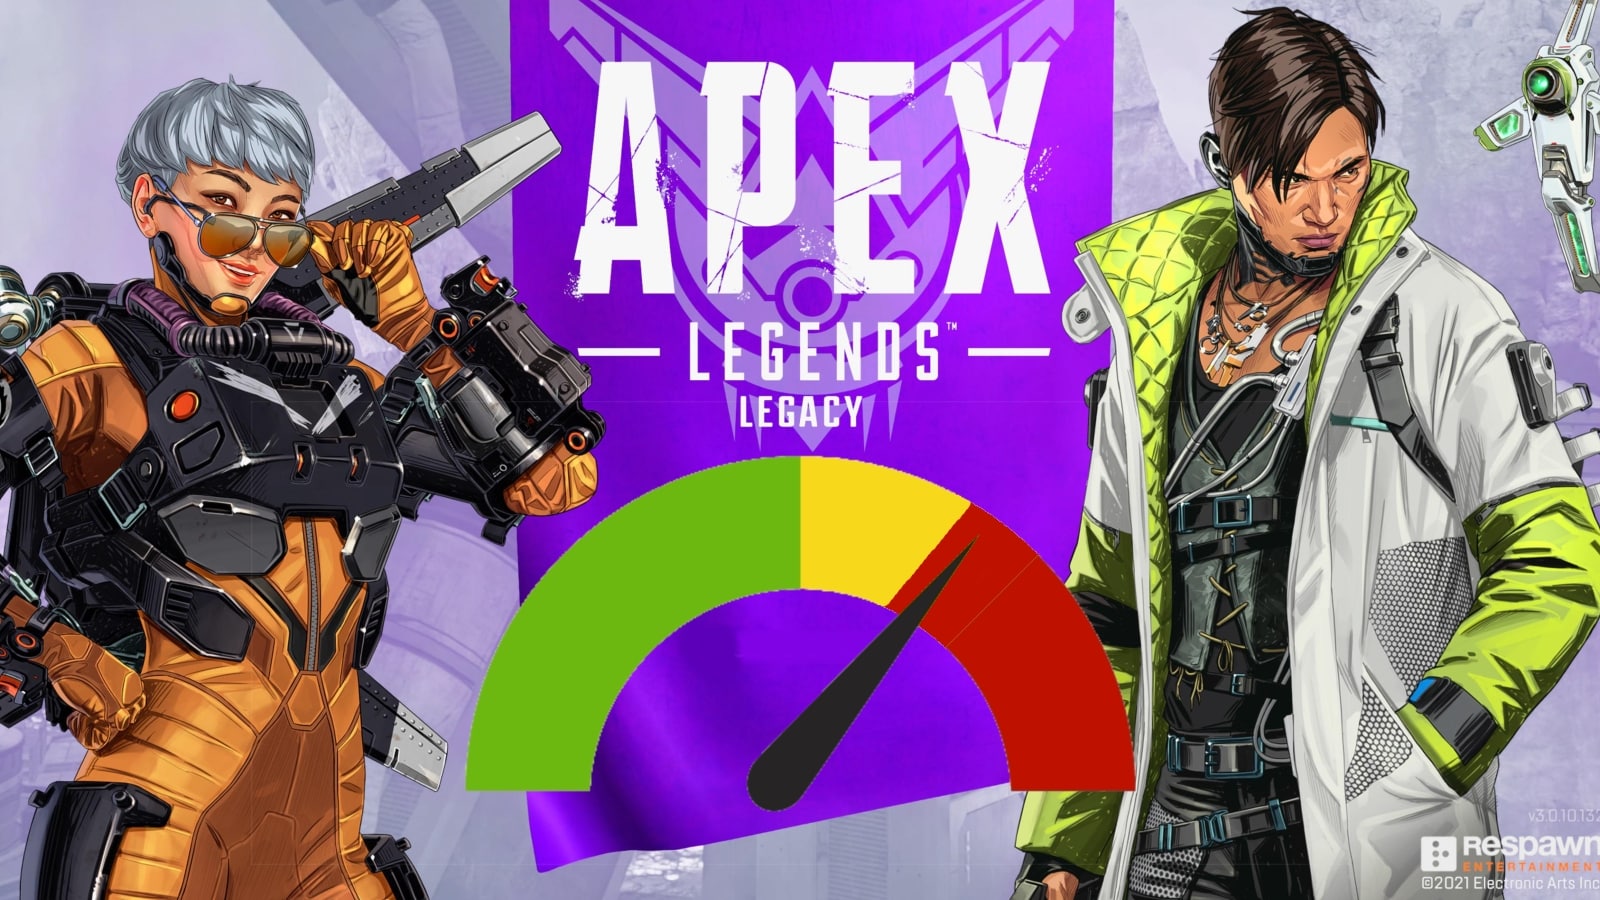 Apex Legends High CPU Usage